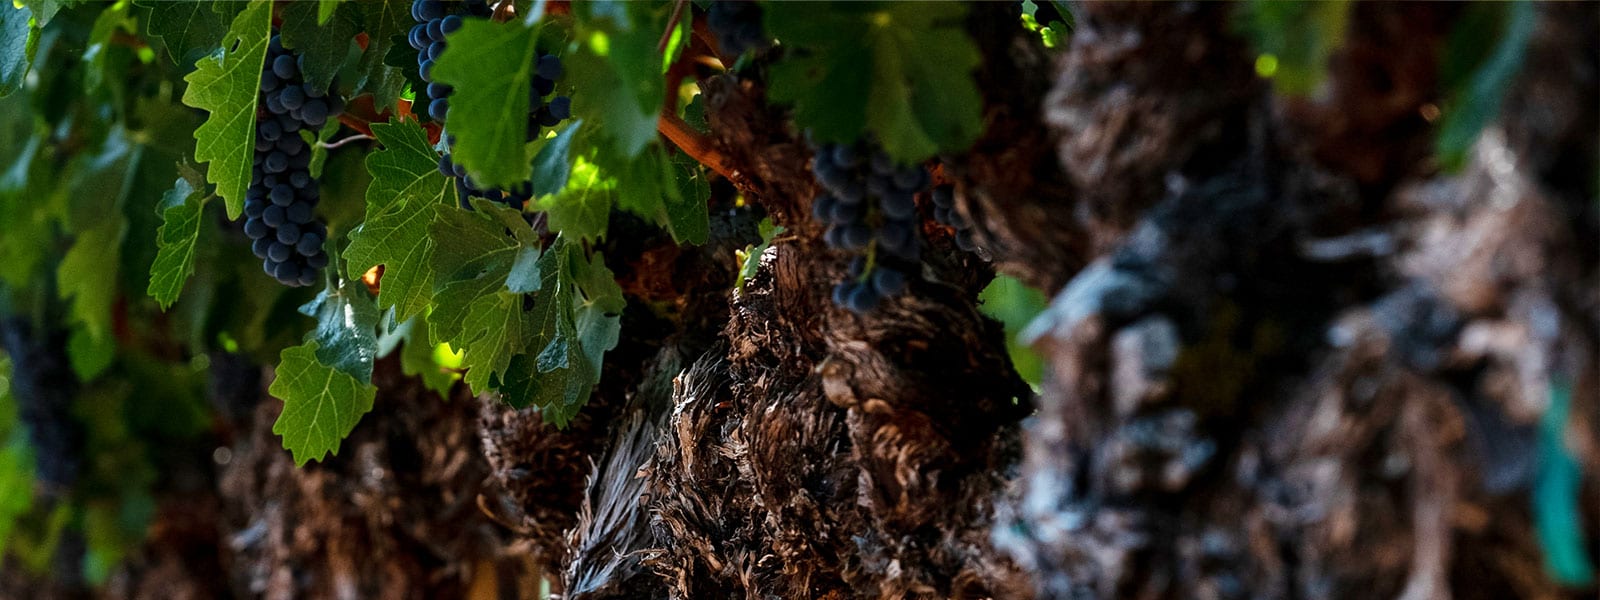 IX Grapes Textur Vines